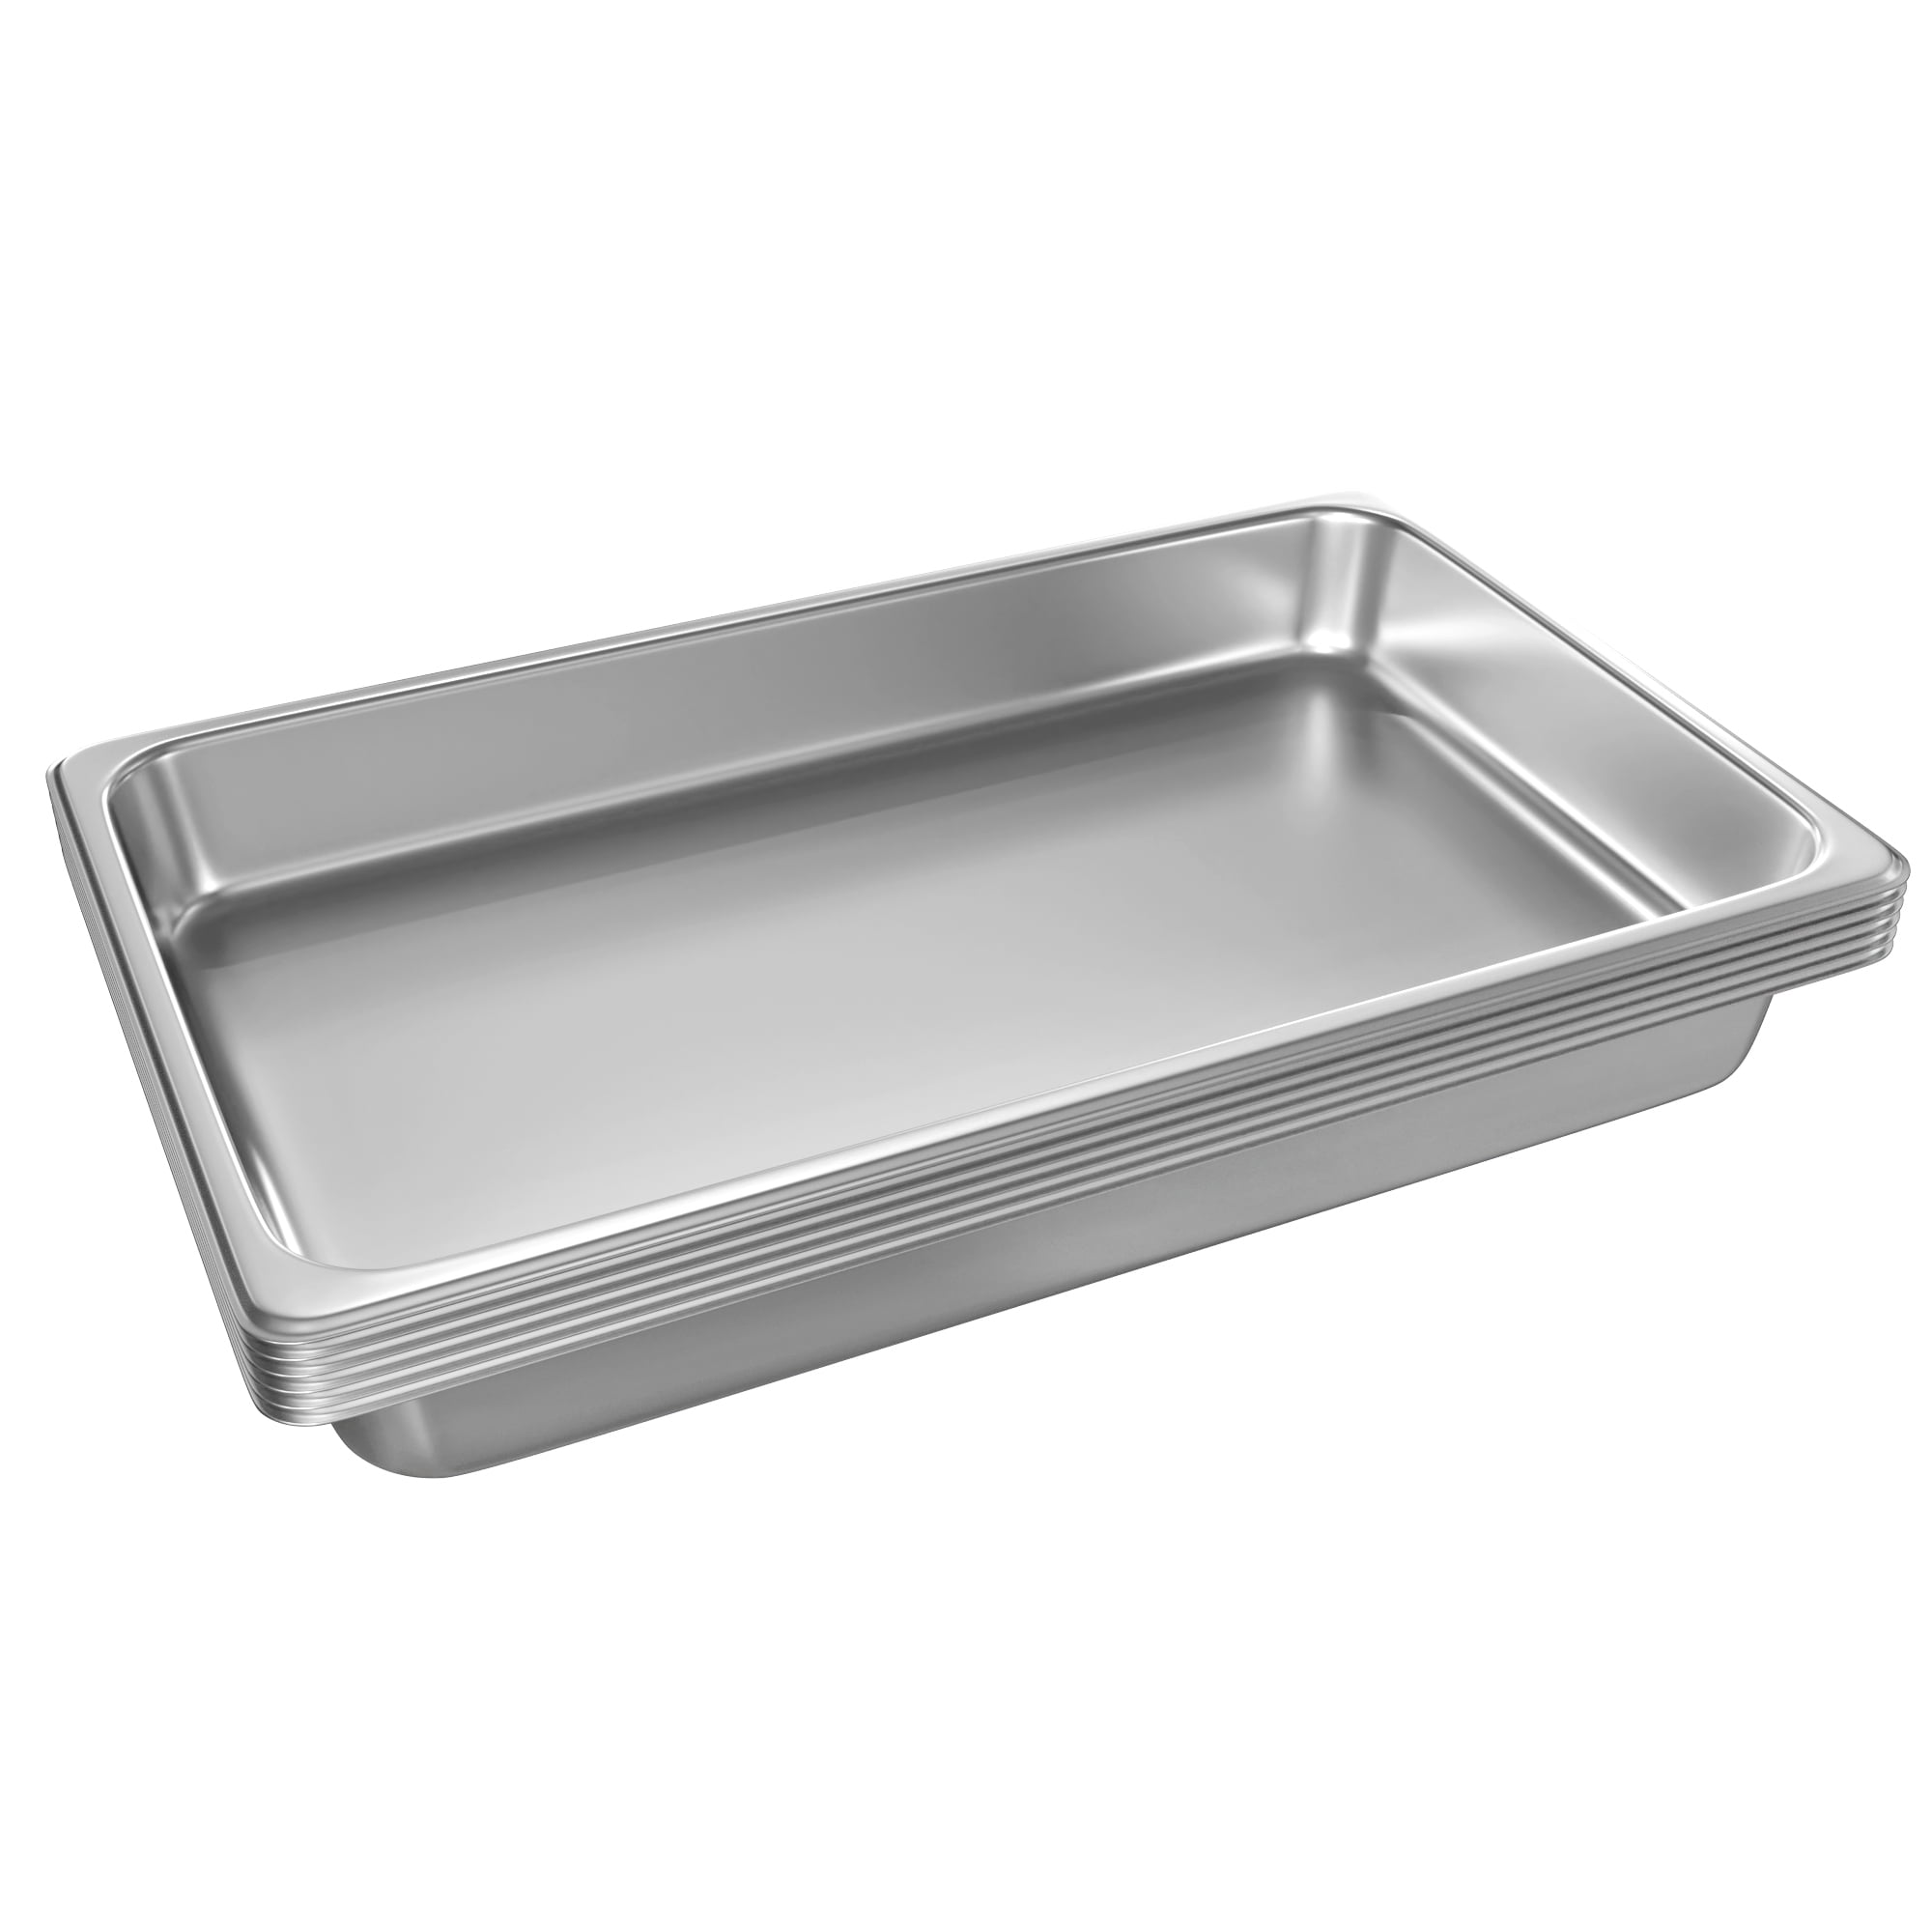 Member's Mark Aluminum Steam Table Pans, Full size, 18 ct